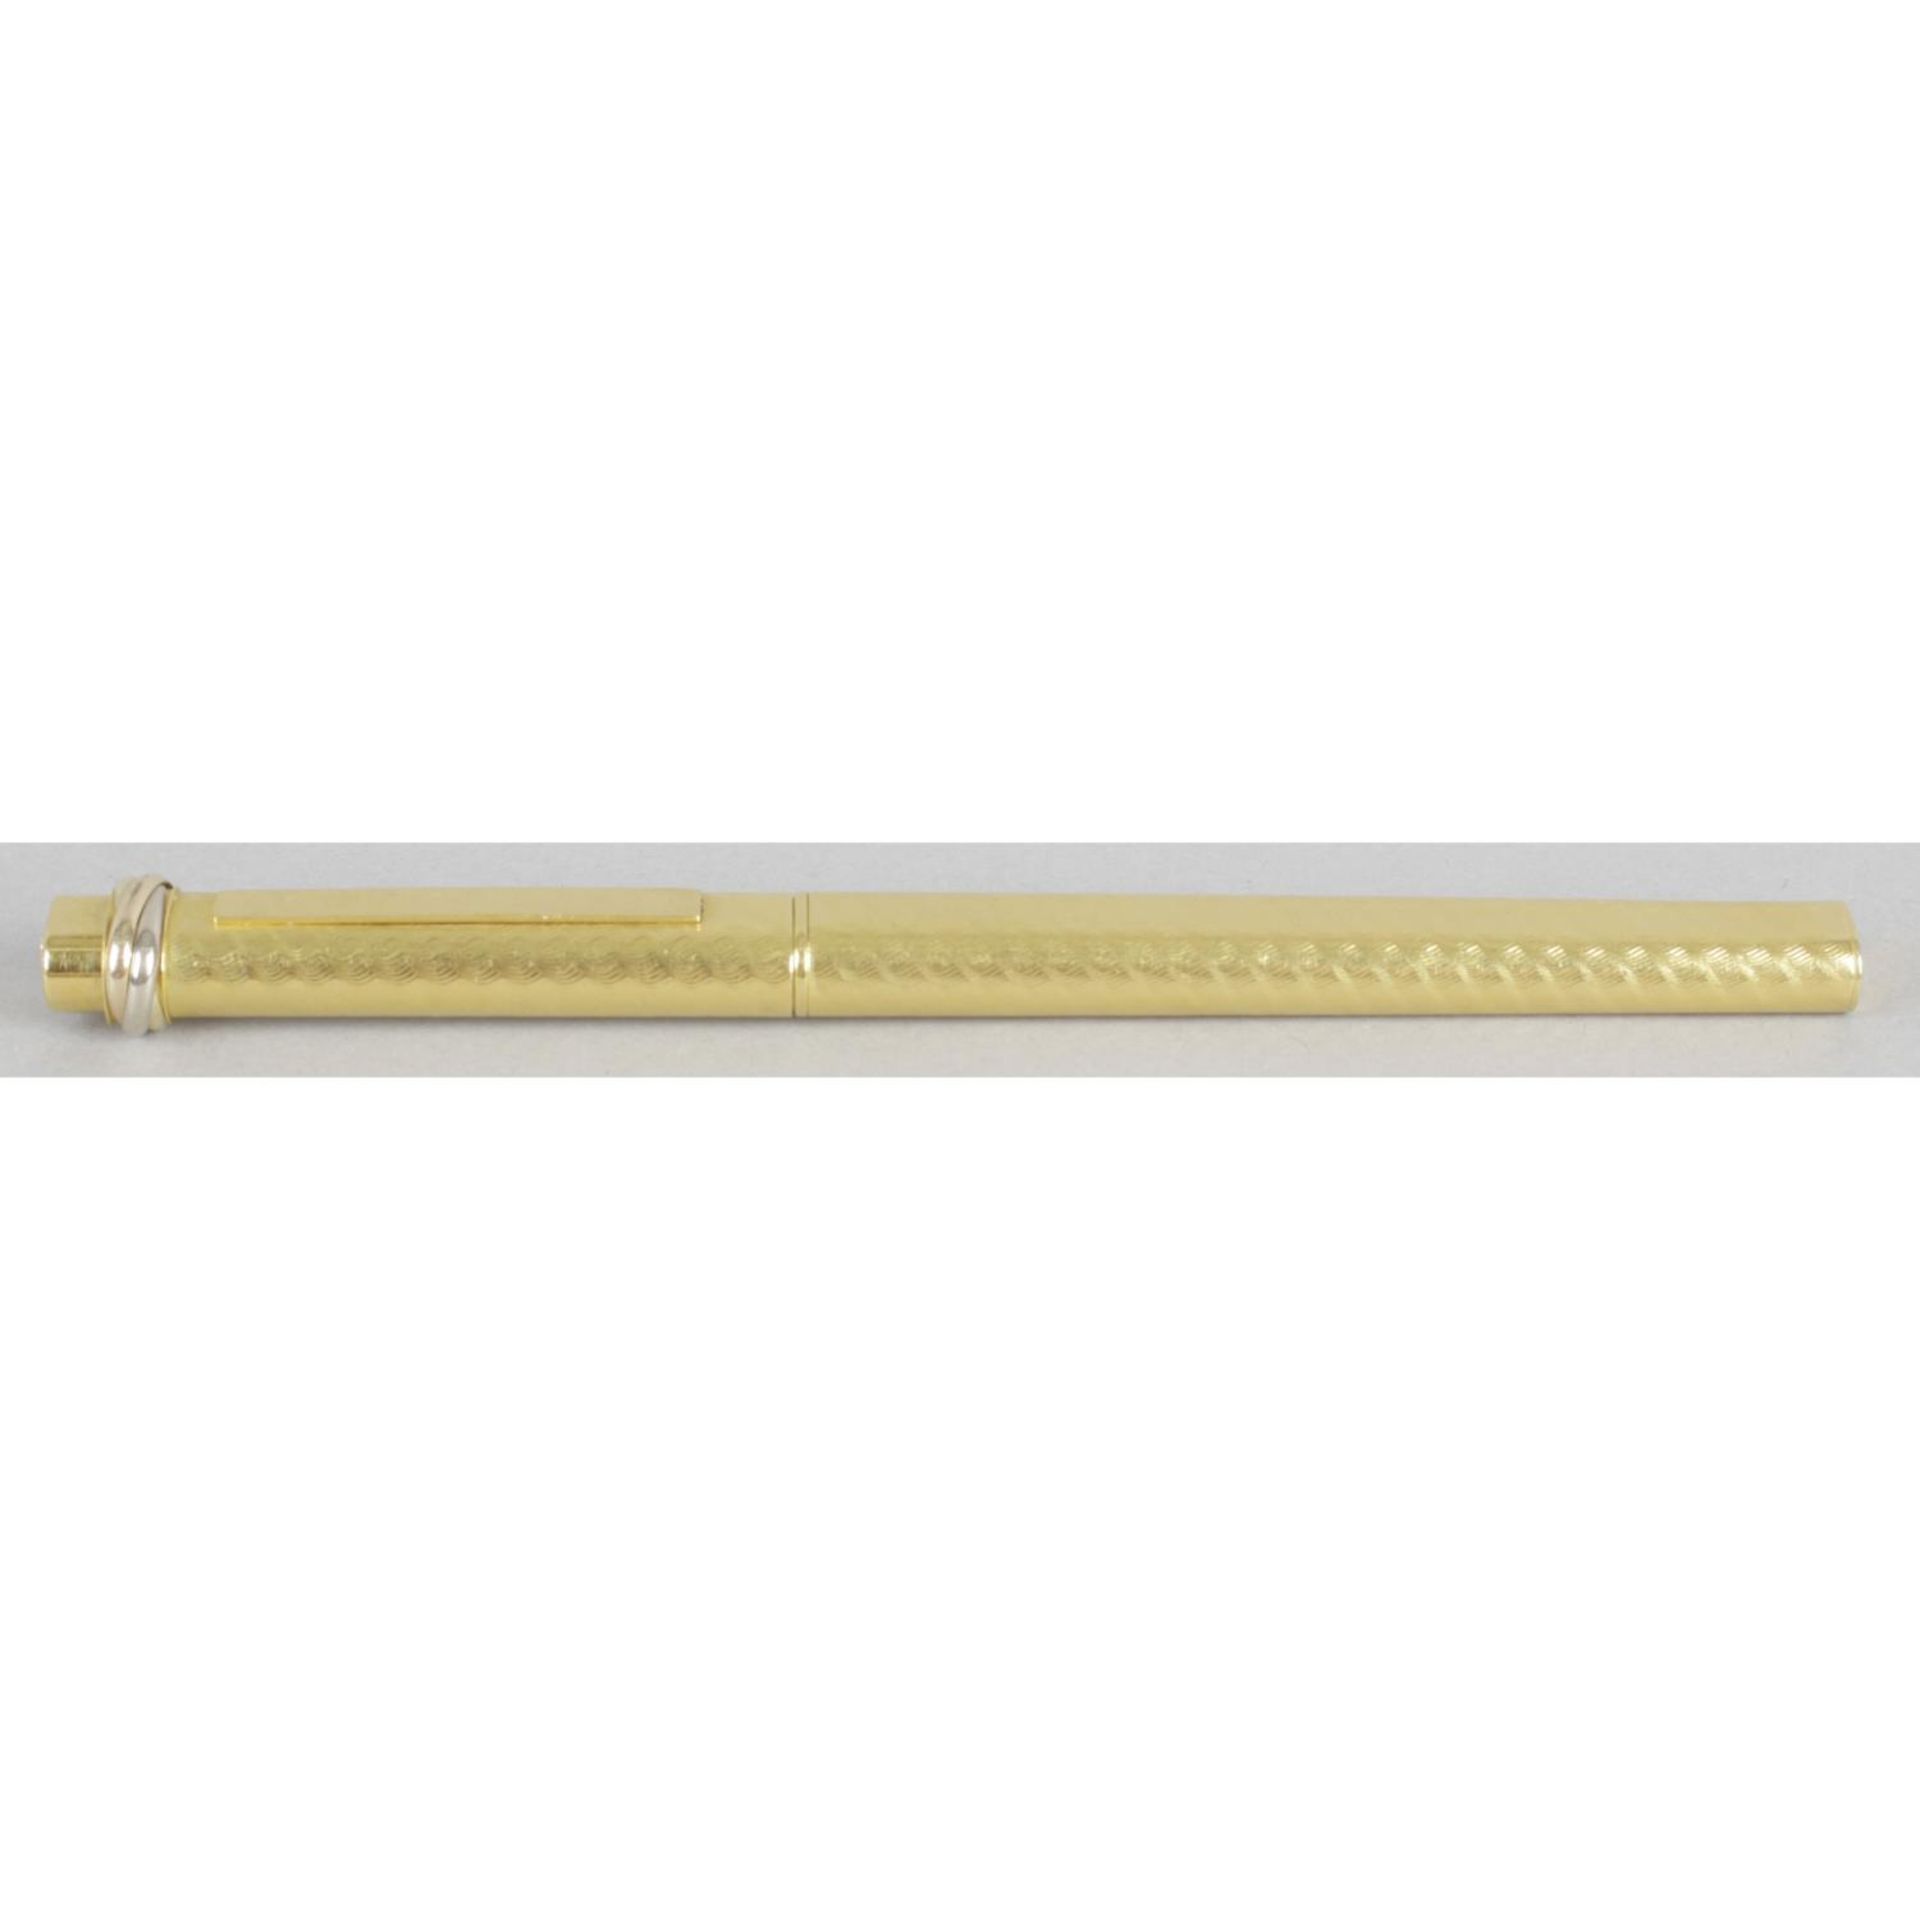 A Must de Cartier gold plated ballpoint pen,